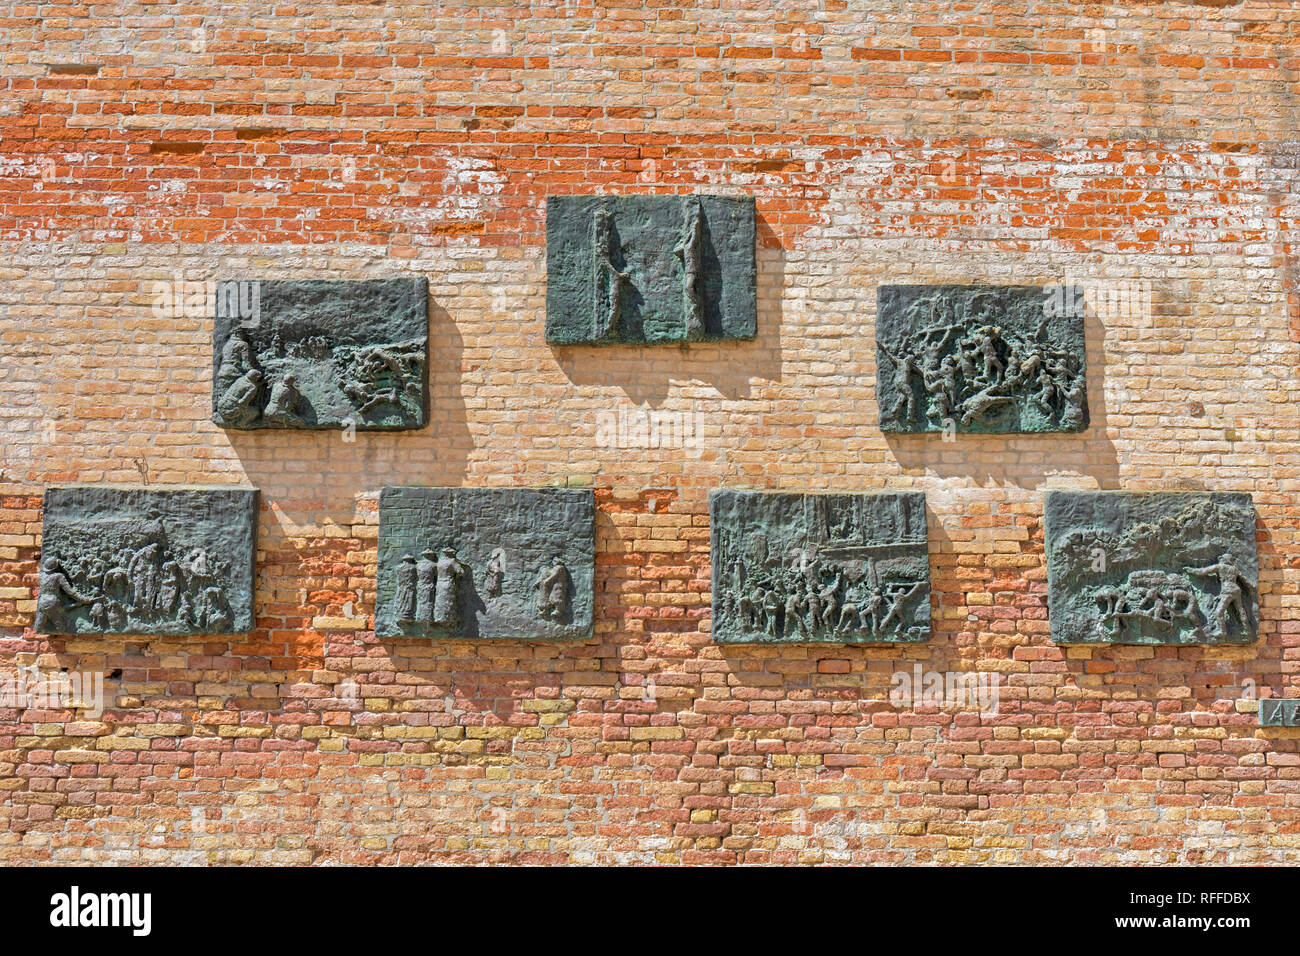 Abschiebung Denkmal auf dem Campo di Ghetto Nuovo, Venedig, Italien. Das Denkmal, ein Werk des Bildhauers Arbit Blatas, der seine Mutter während der Holo verloren Stockfoto